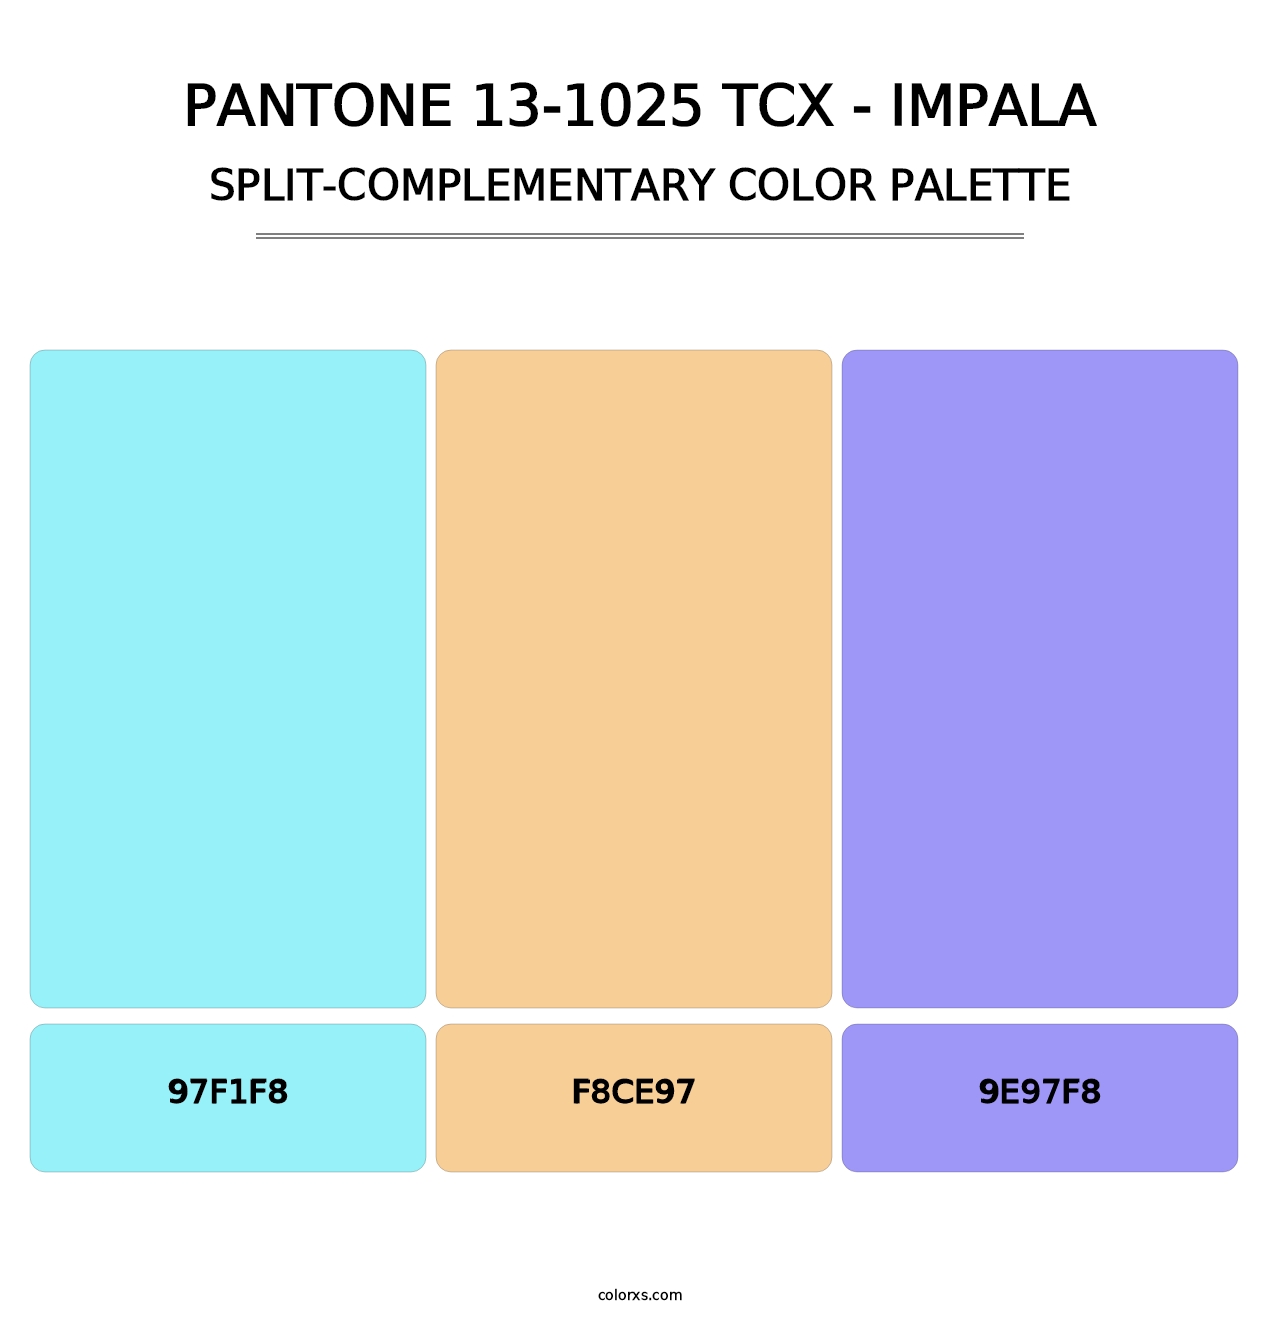 PANTONE 13-1025 TCX - Impala - Split-Complementary Color Palette